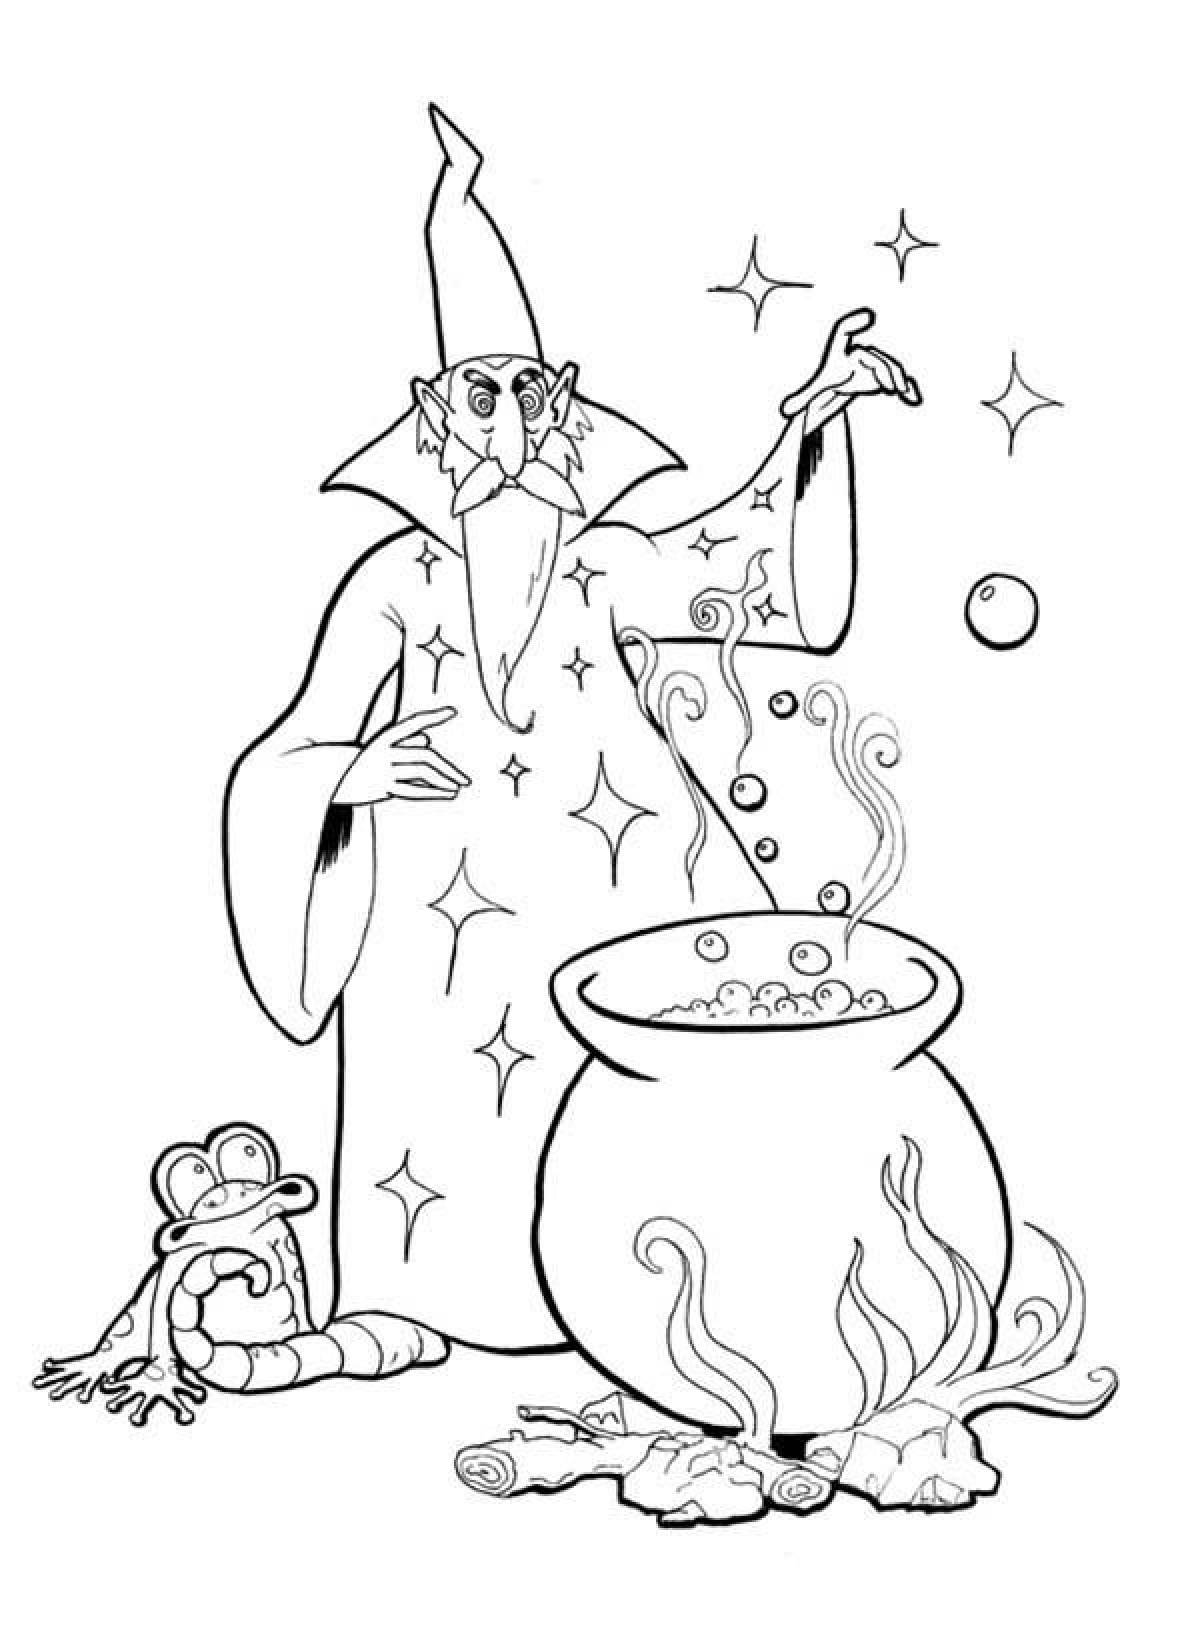 Wizard with cauldron